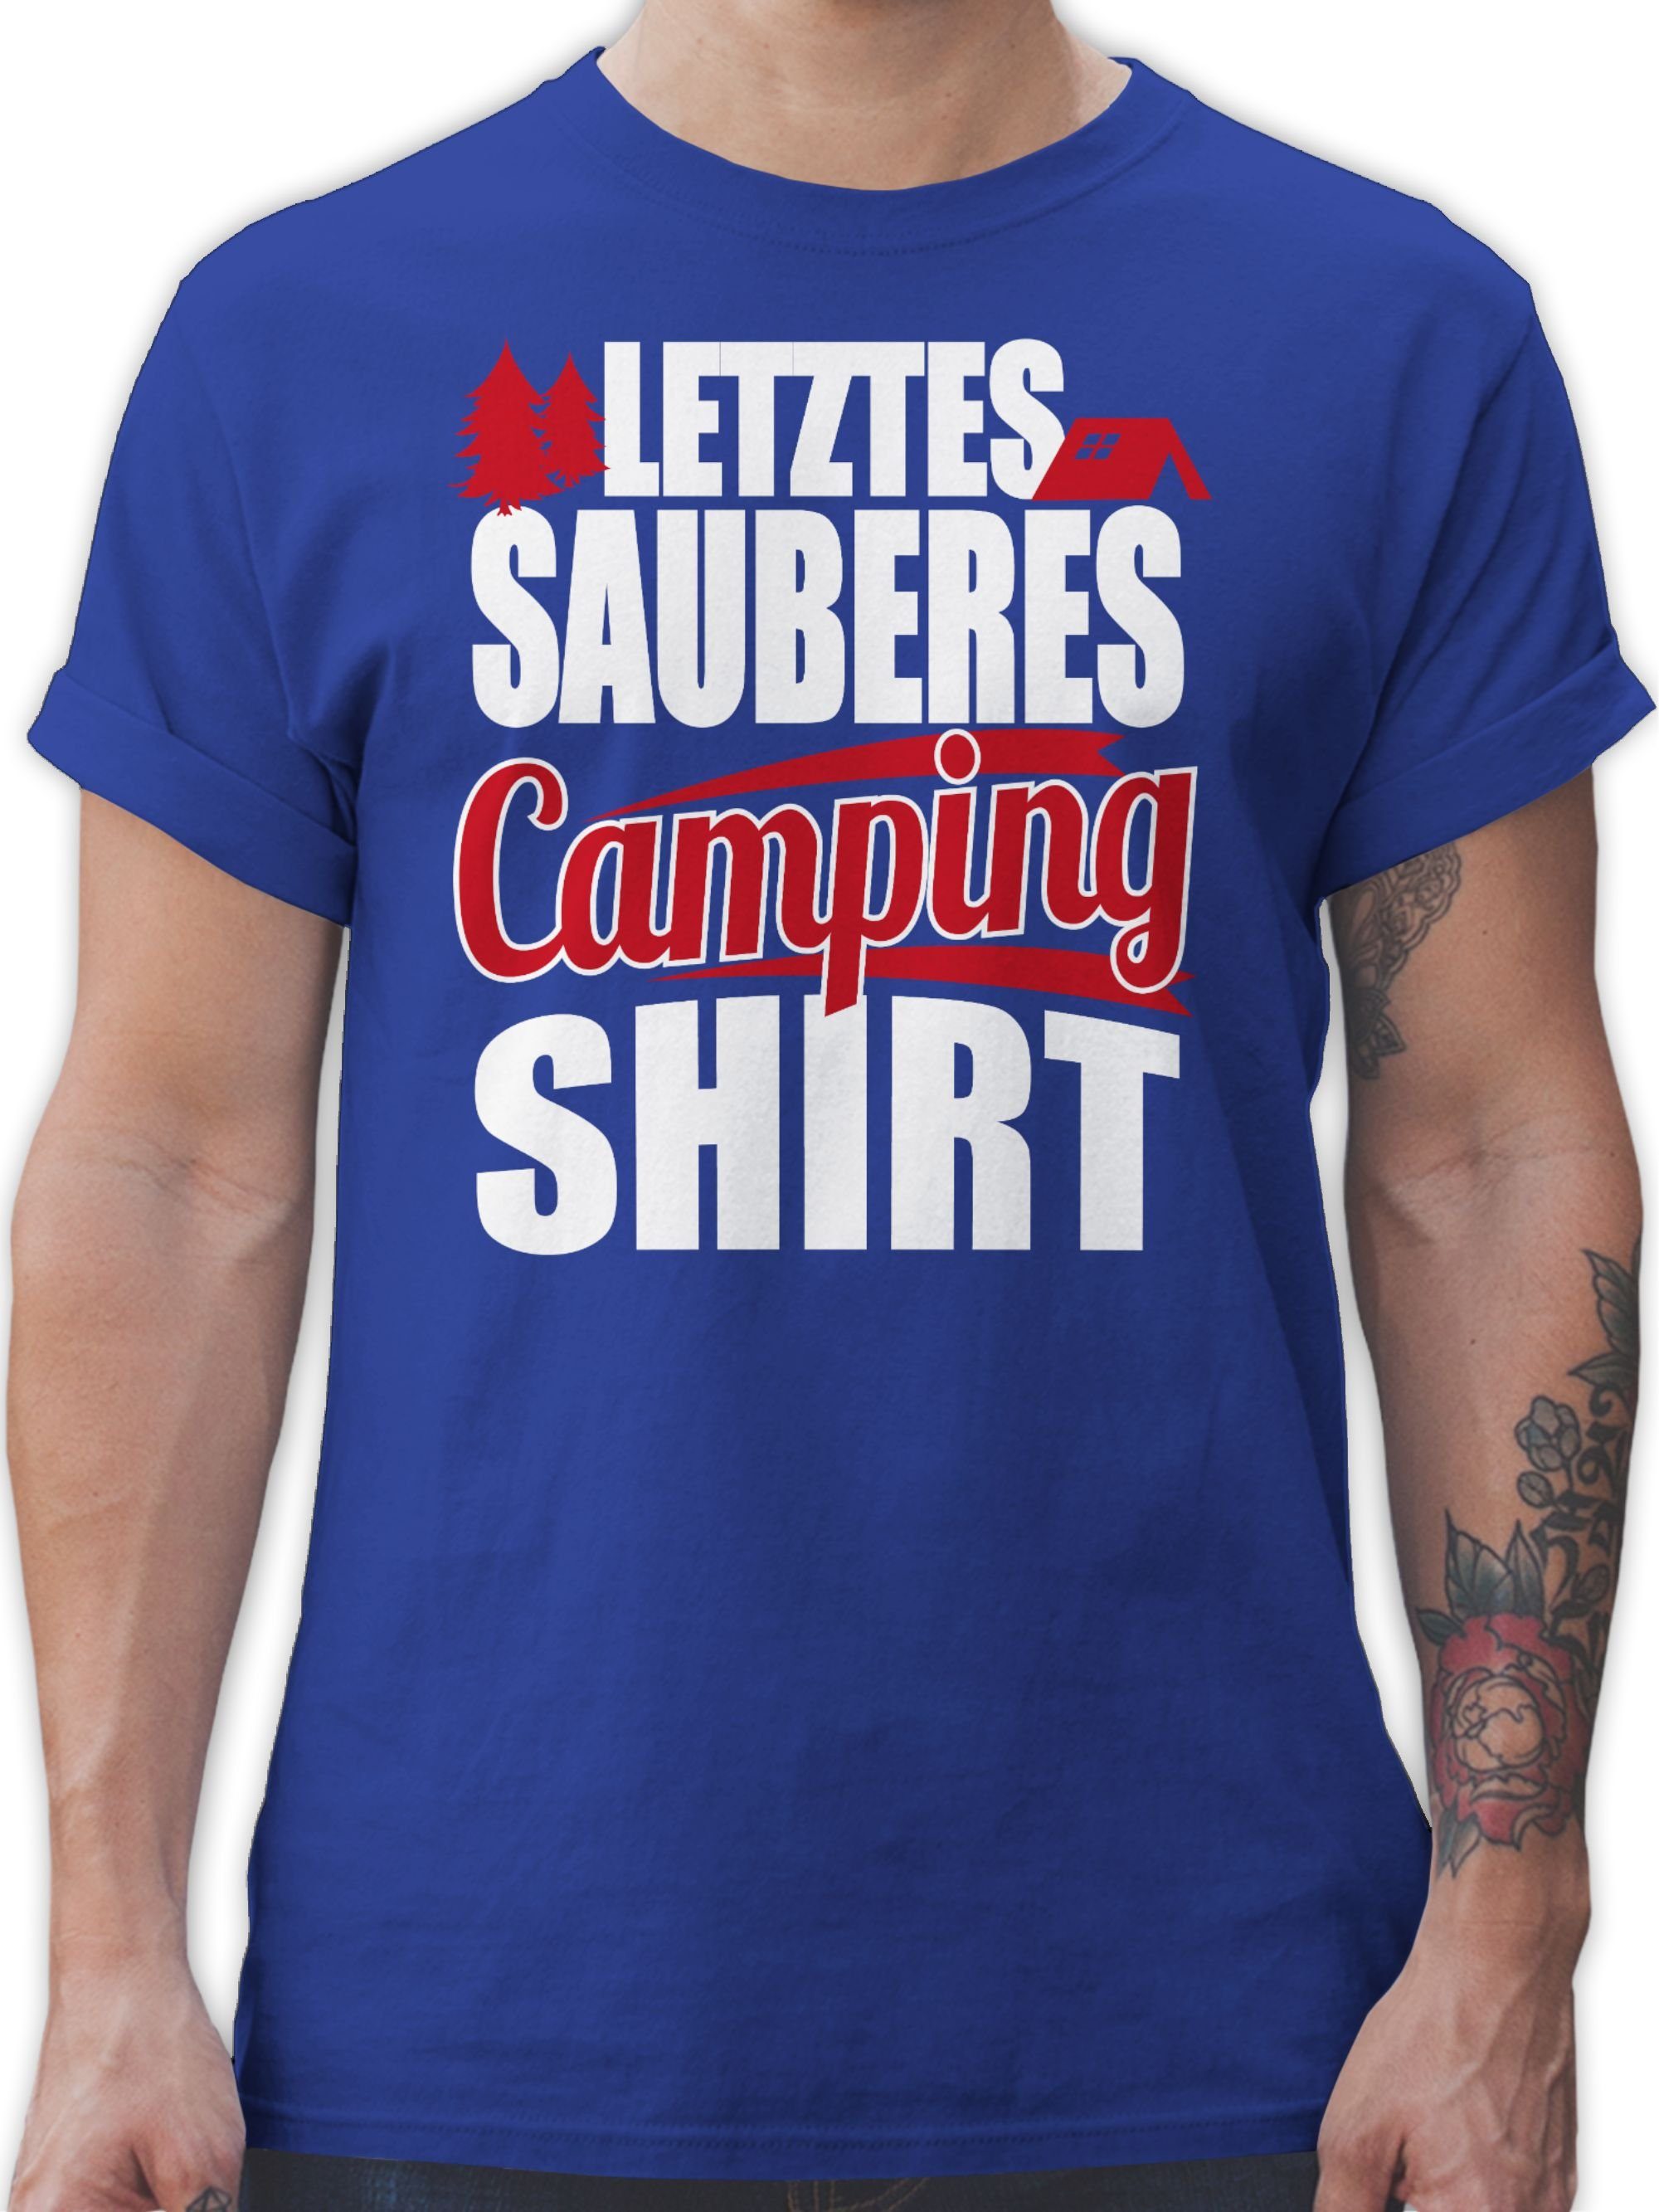 Shirtracer T-Shirt Letztes sauberes Camping Shirt Hobby Outfit 3 Royalblau